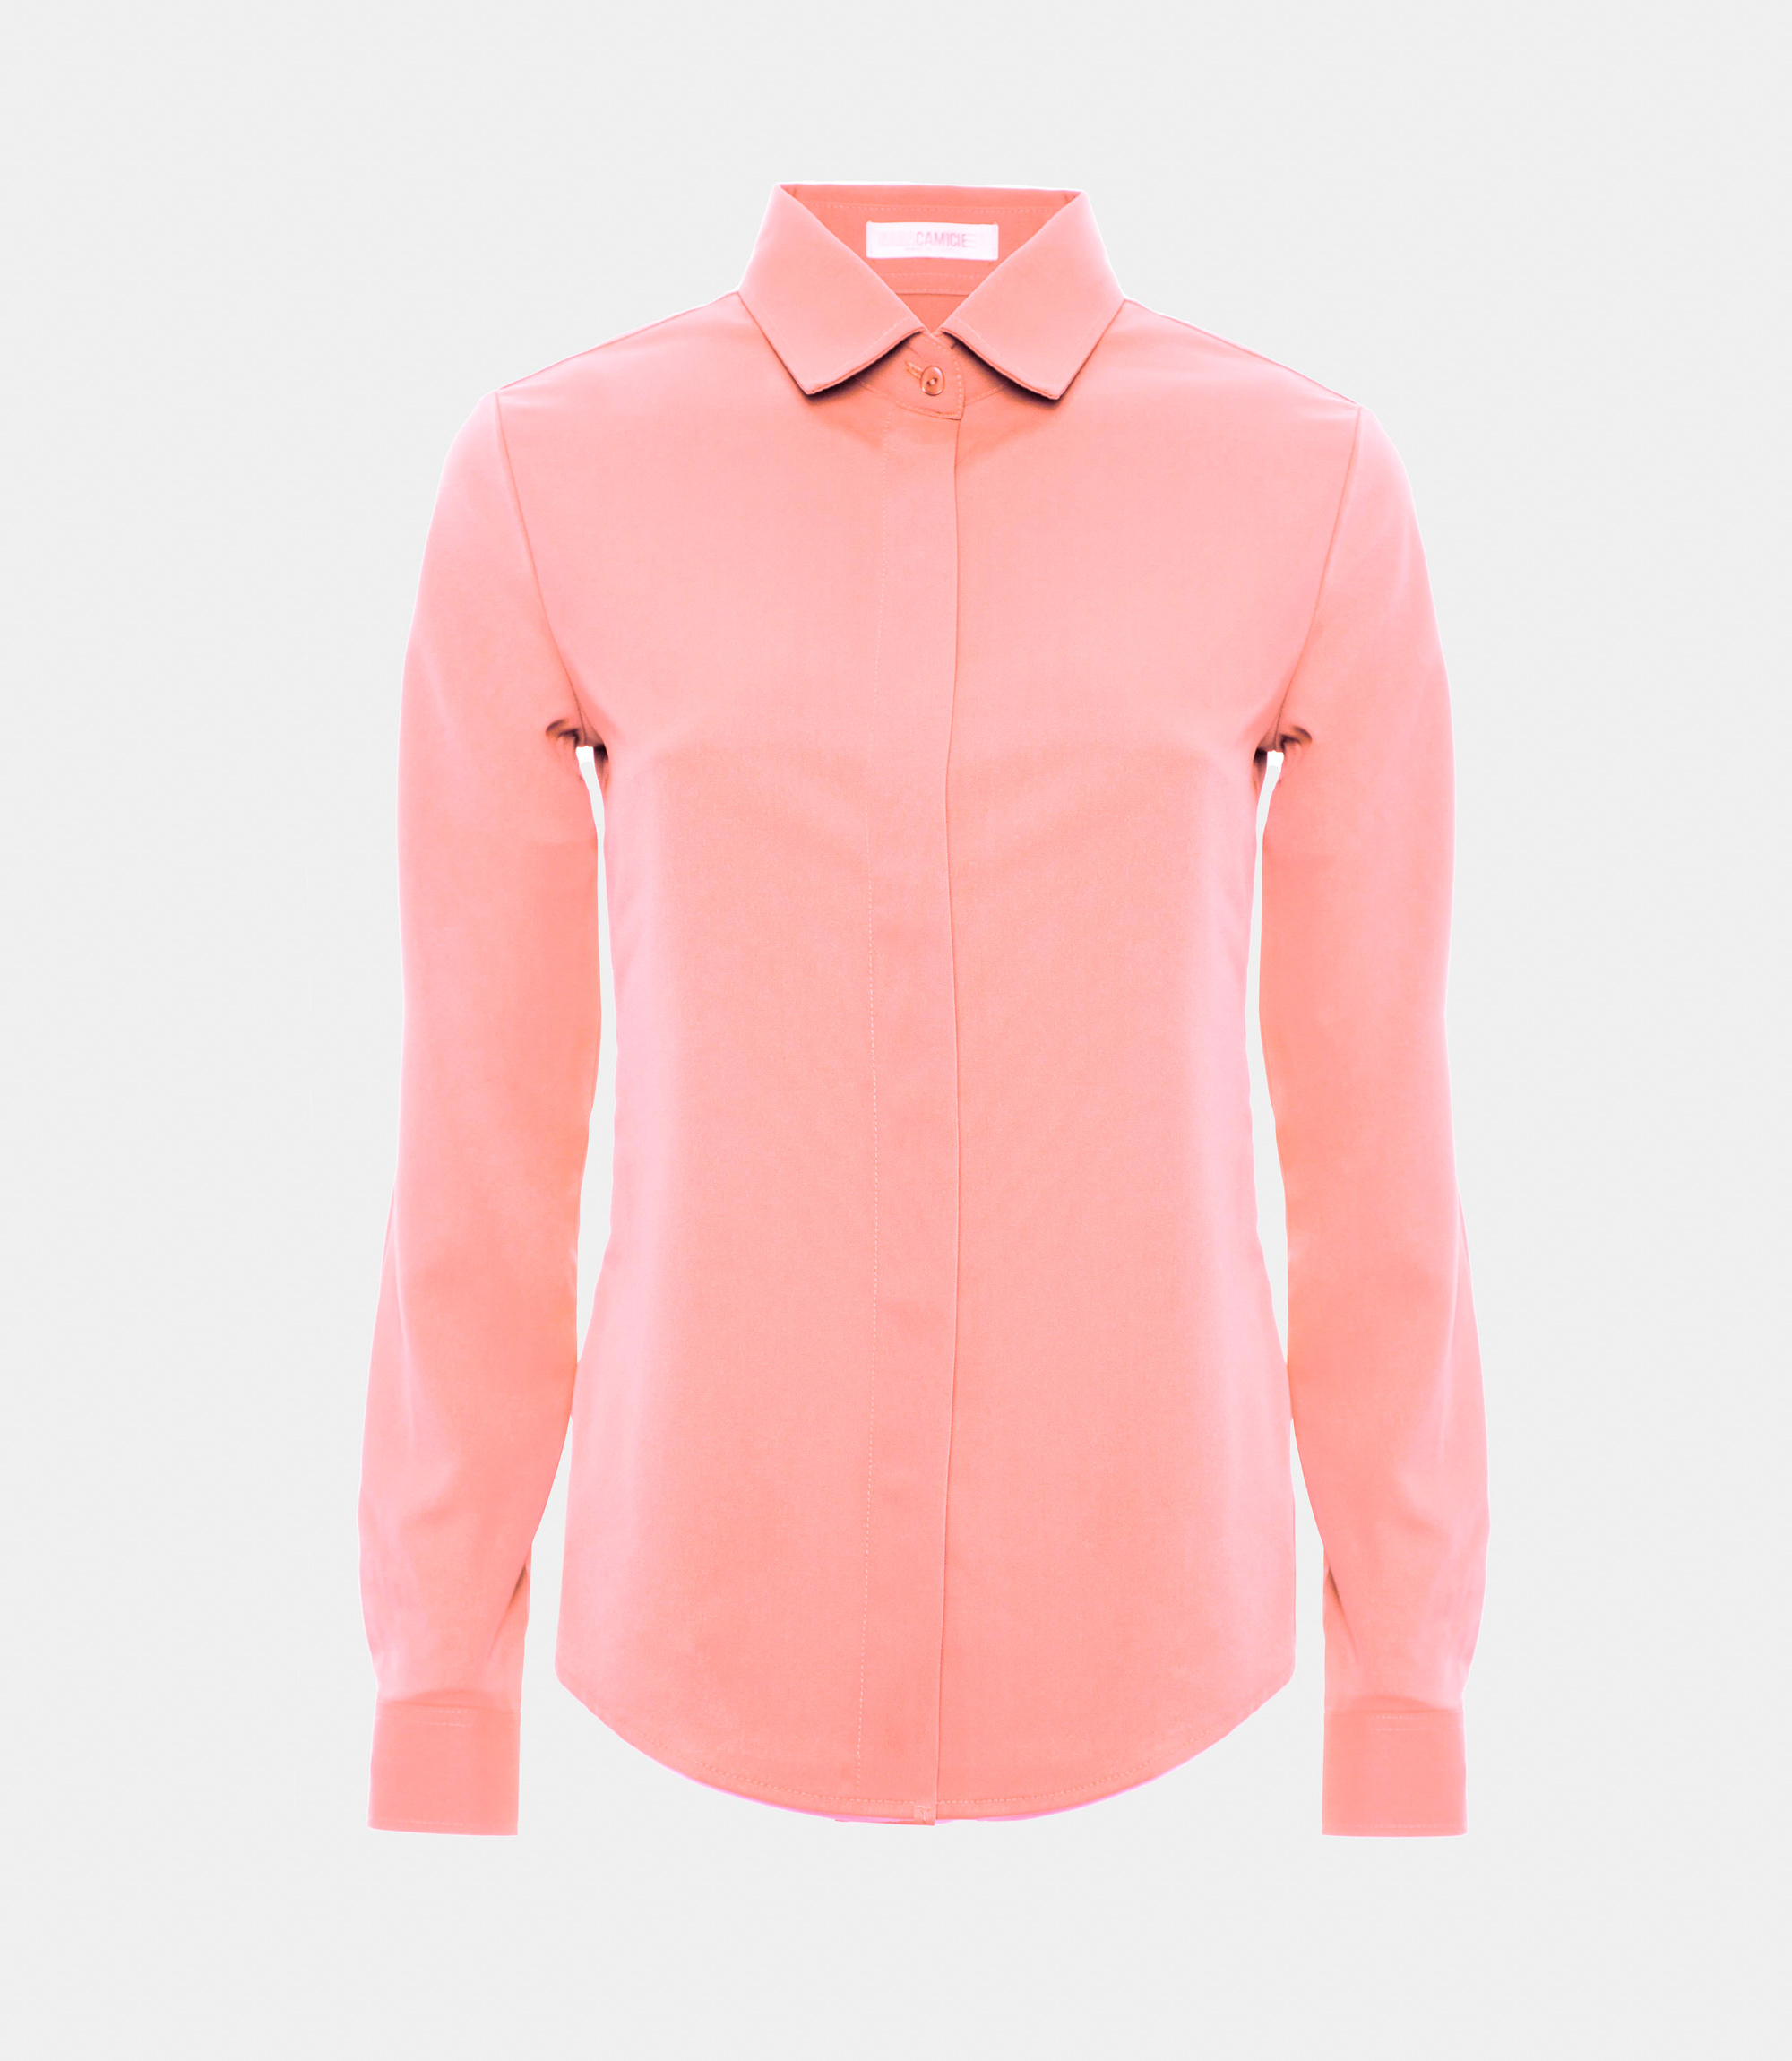 Women's shirt - Pink - Nara Milano